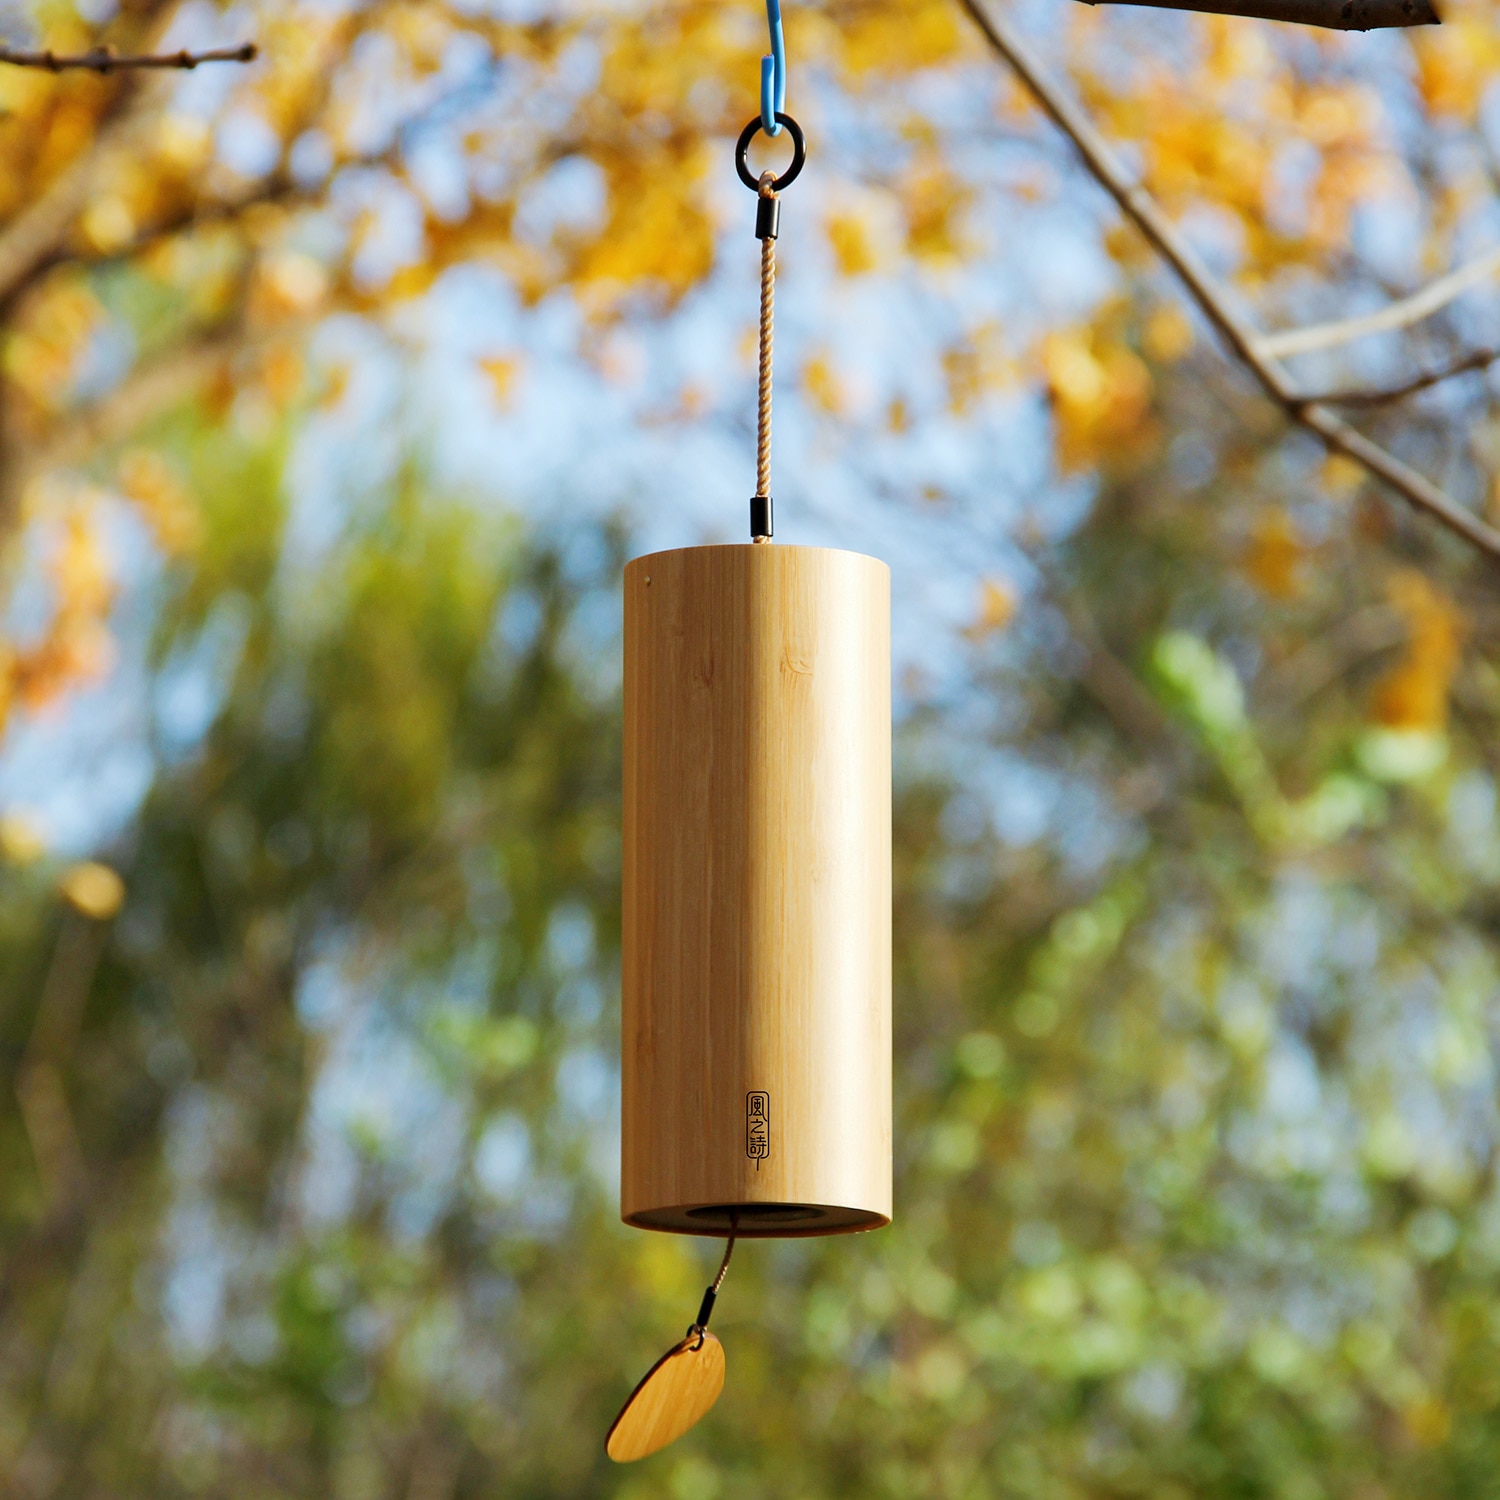 Bamboe Windgong Windchime Windbell Voor Outdoor Tuin Patio Home Decoratie Zen Meditatie Ontspanning Akkoord G-B-D-C